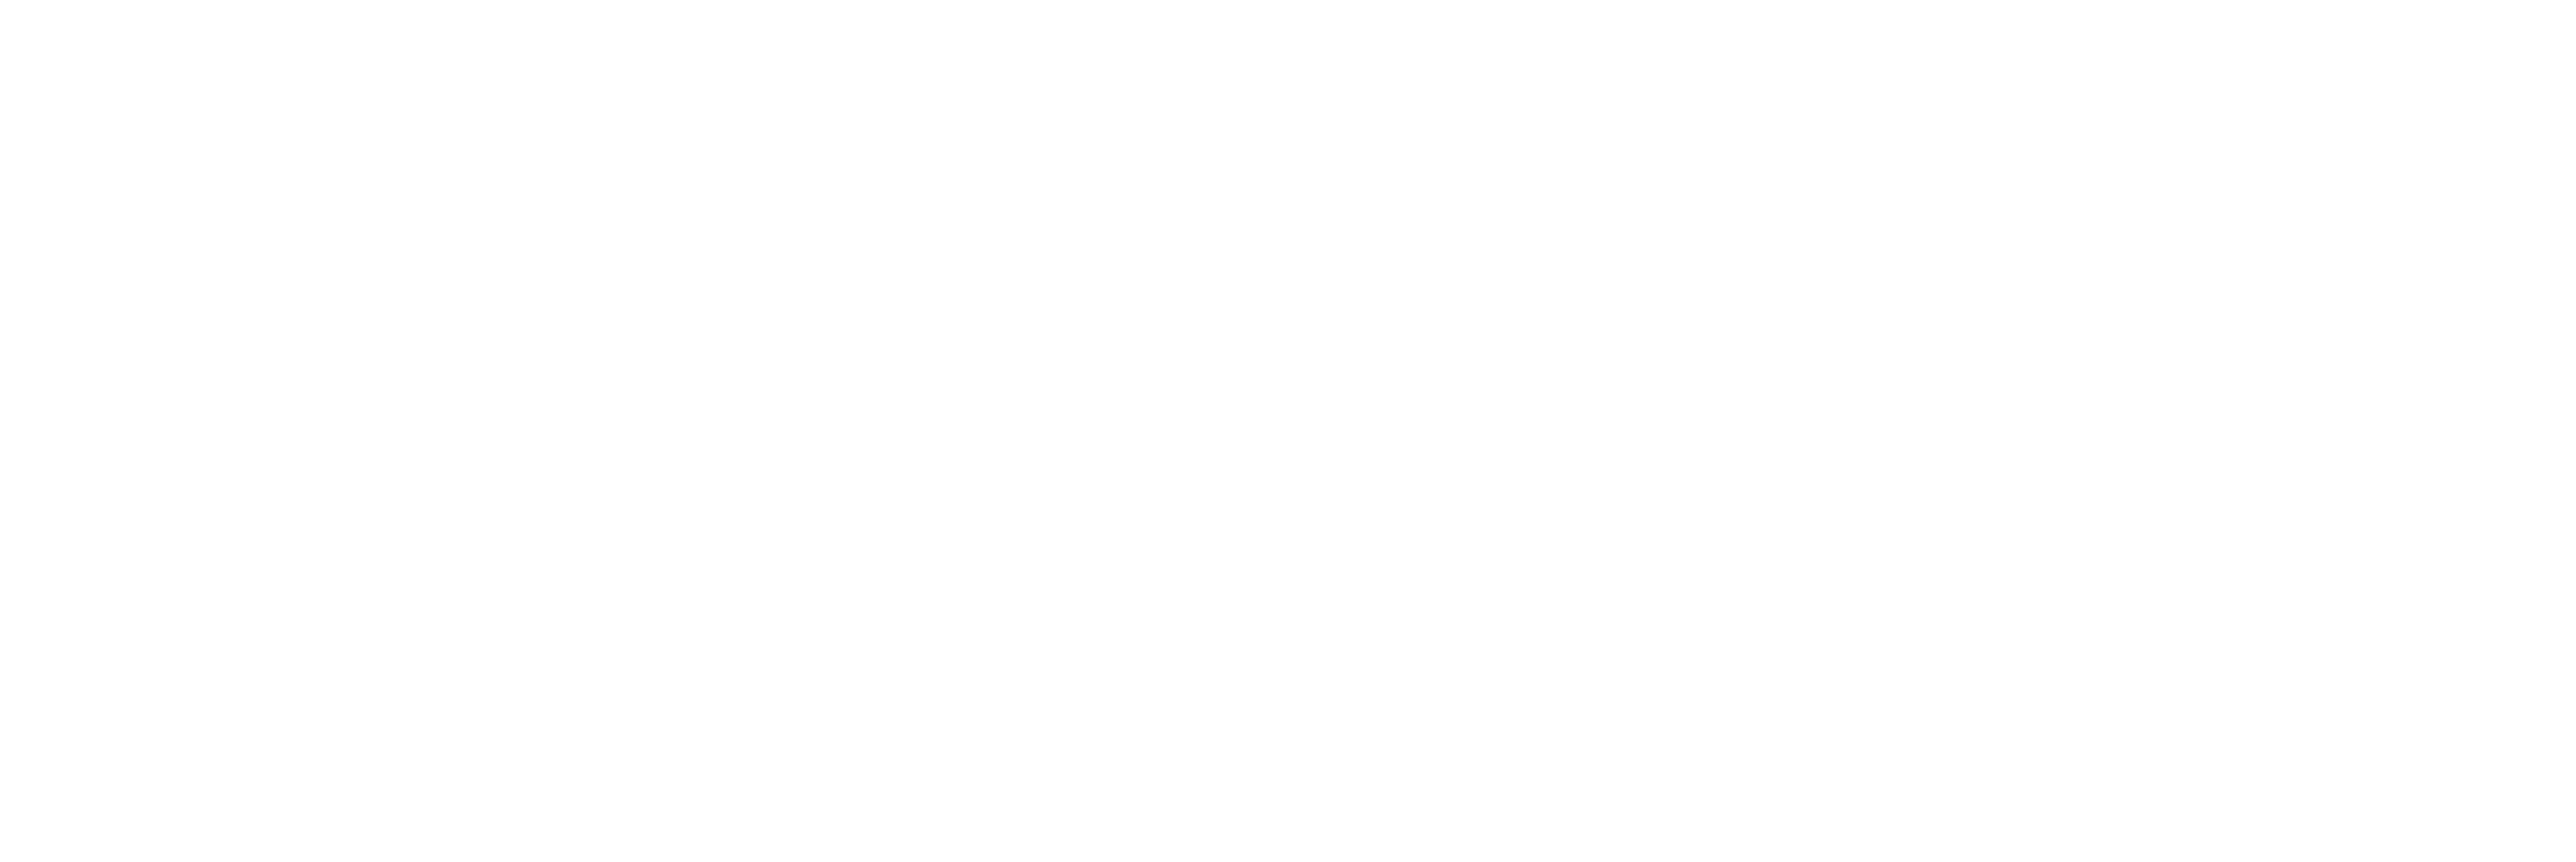 Animalhouse.cz